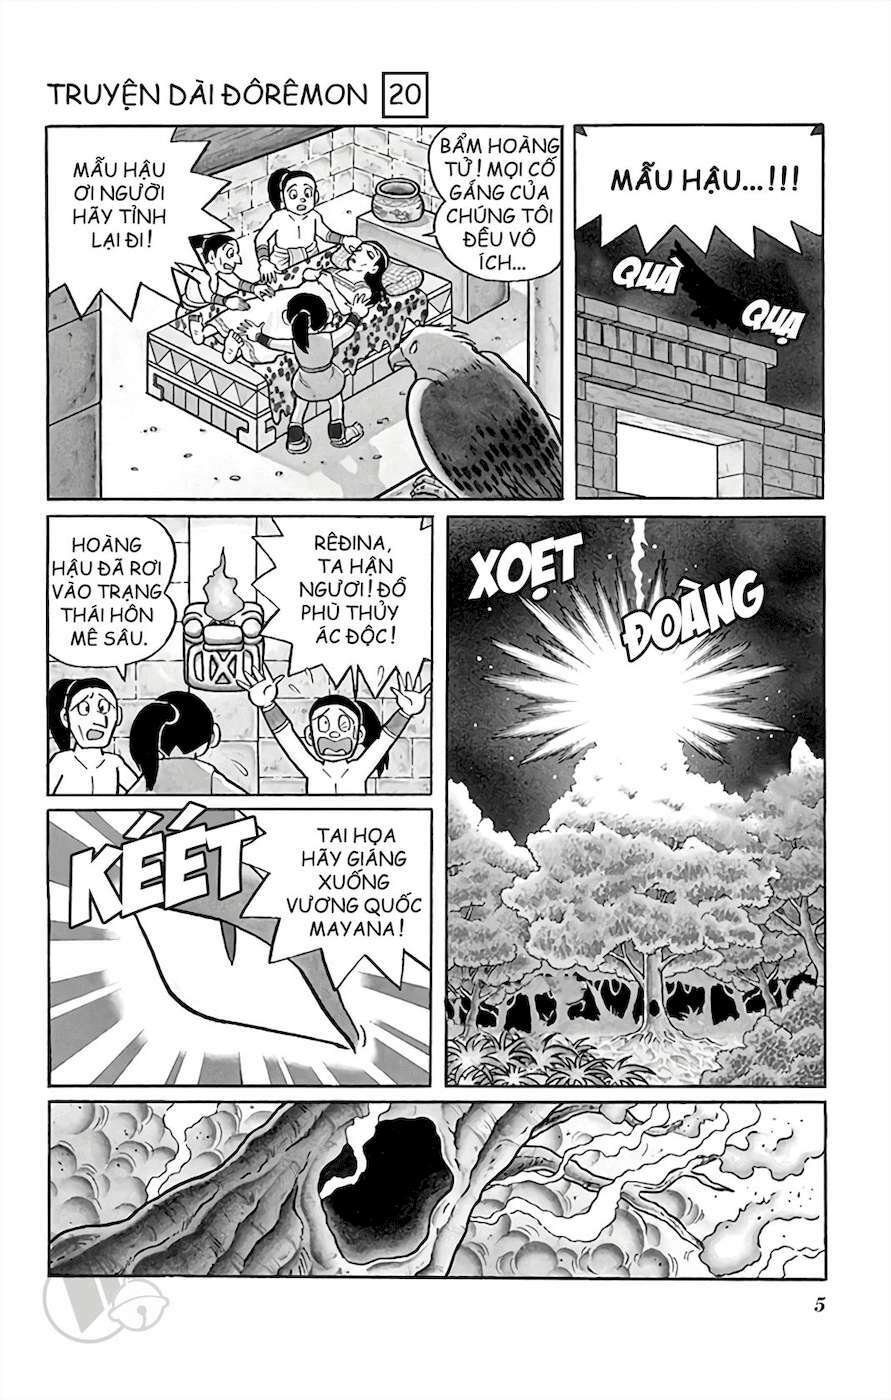 Truyện Tranh Doraemon: Truyền Thuyết Về Vua Mặt Trời Nôbita trang 4